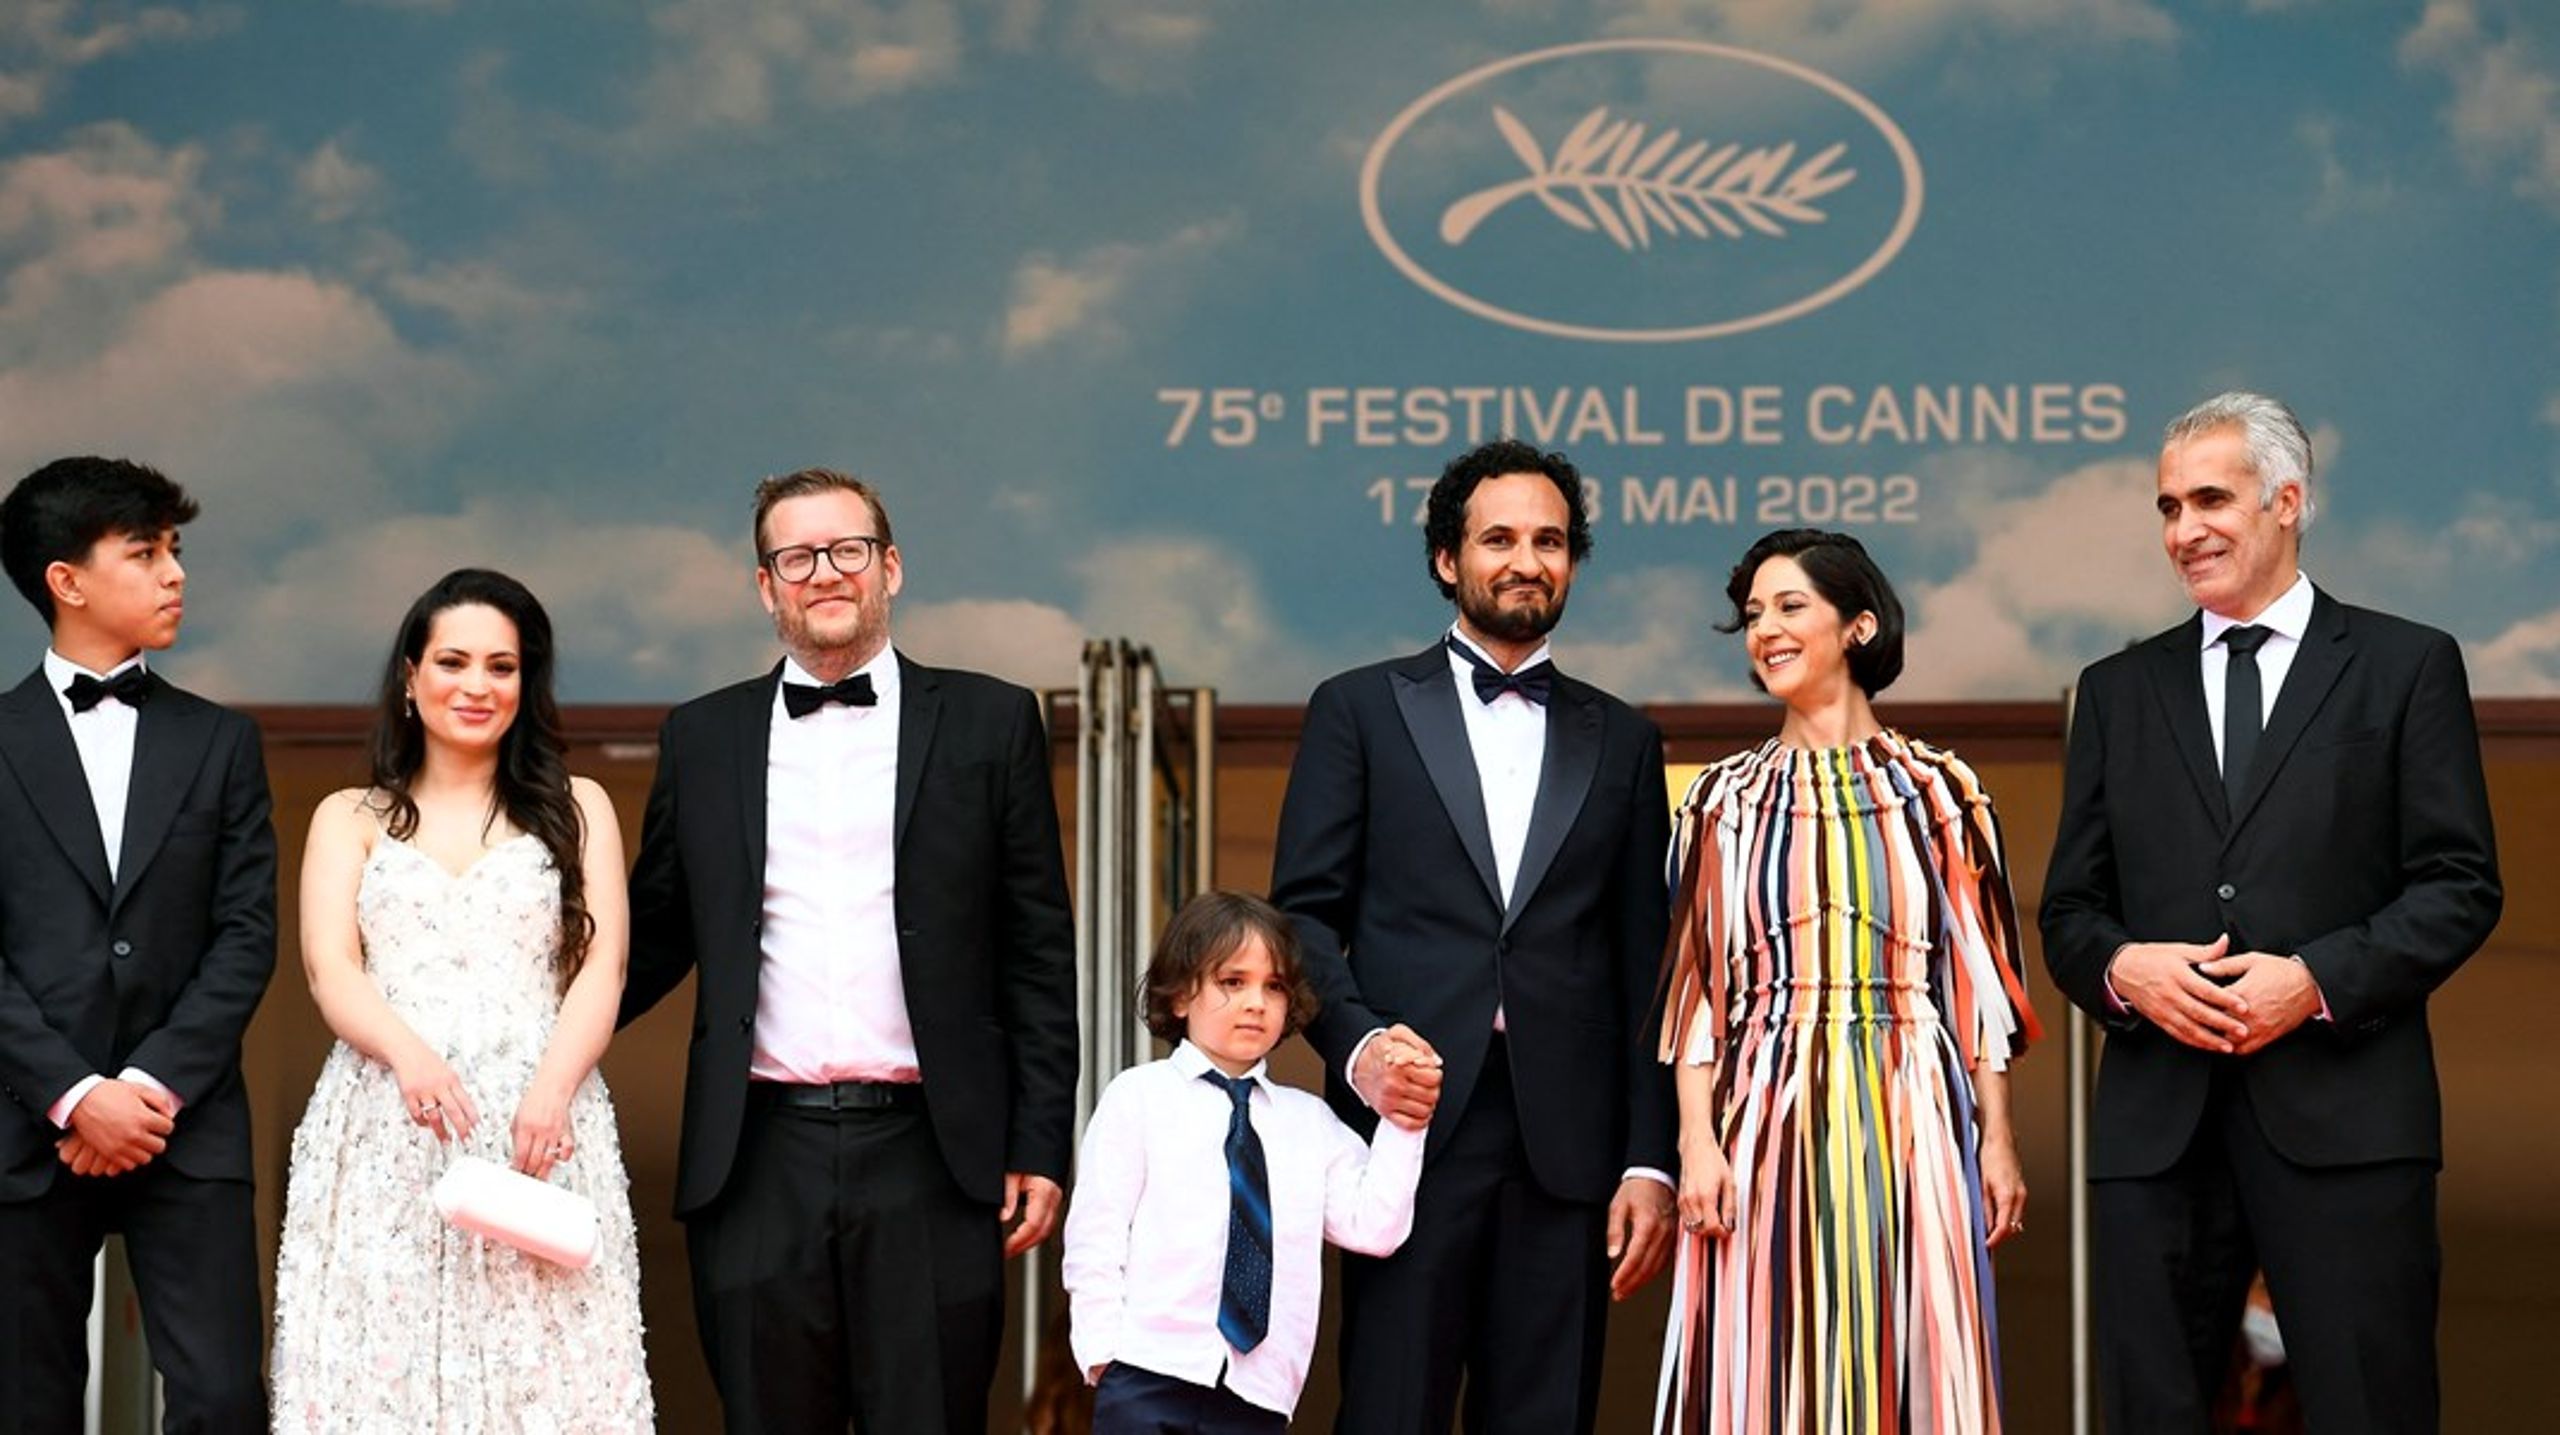 På Cannes Festivalen vandt&nbsp;Zar Amir Ebrahimi prisen for bedste kvindelige skuespiller for hendes rolle som journalisten i filmen 'Holy Spider'. Filmen er skrevet af&nbsp;Ali Abbasi i samarbejde med Afshin Kamran Bahrami, og den er&nbsp;produceret af Jacob Jarek for Profile Pictures.&nbsp;